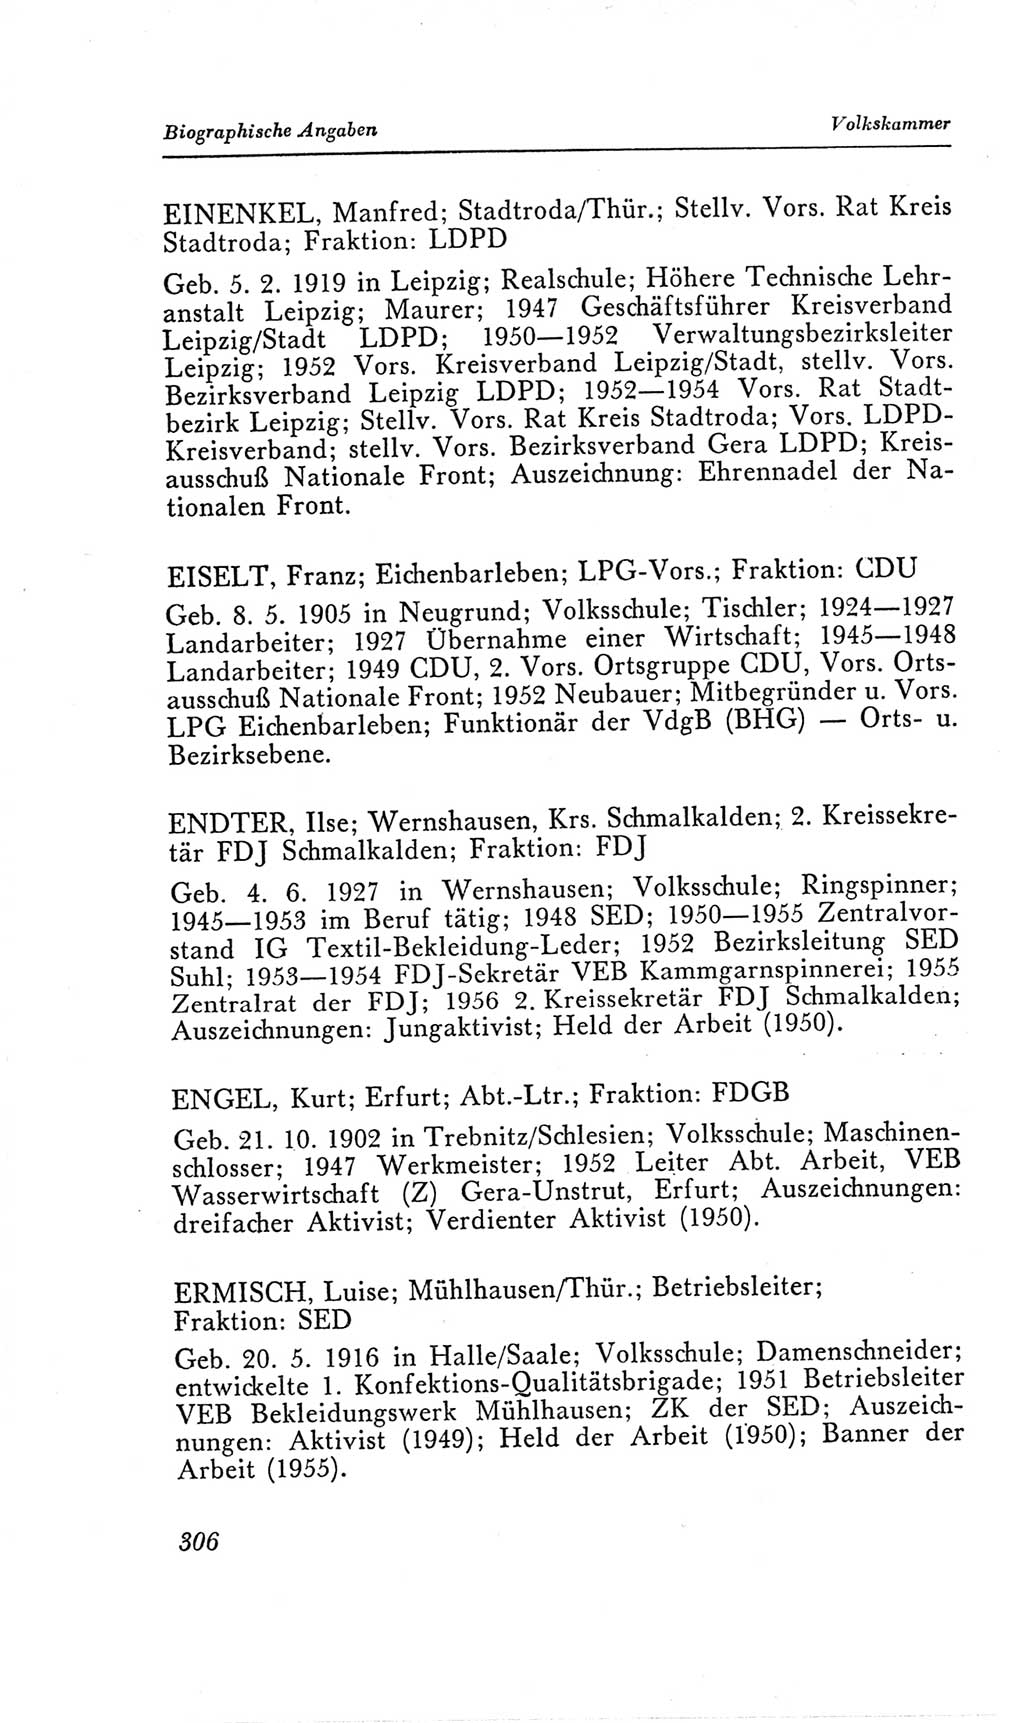 Handbuch der Volkskammer (VK) der Deutschen Demokratischen Republik (DDR), 2. Wahlperiode 1954-1958, Seite 306 (Hdb. VK. DDR, 2. WP. 1954-1958, S. 306)